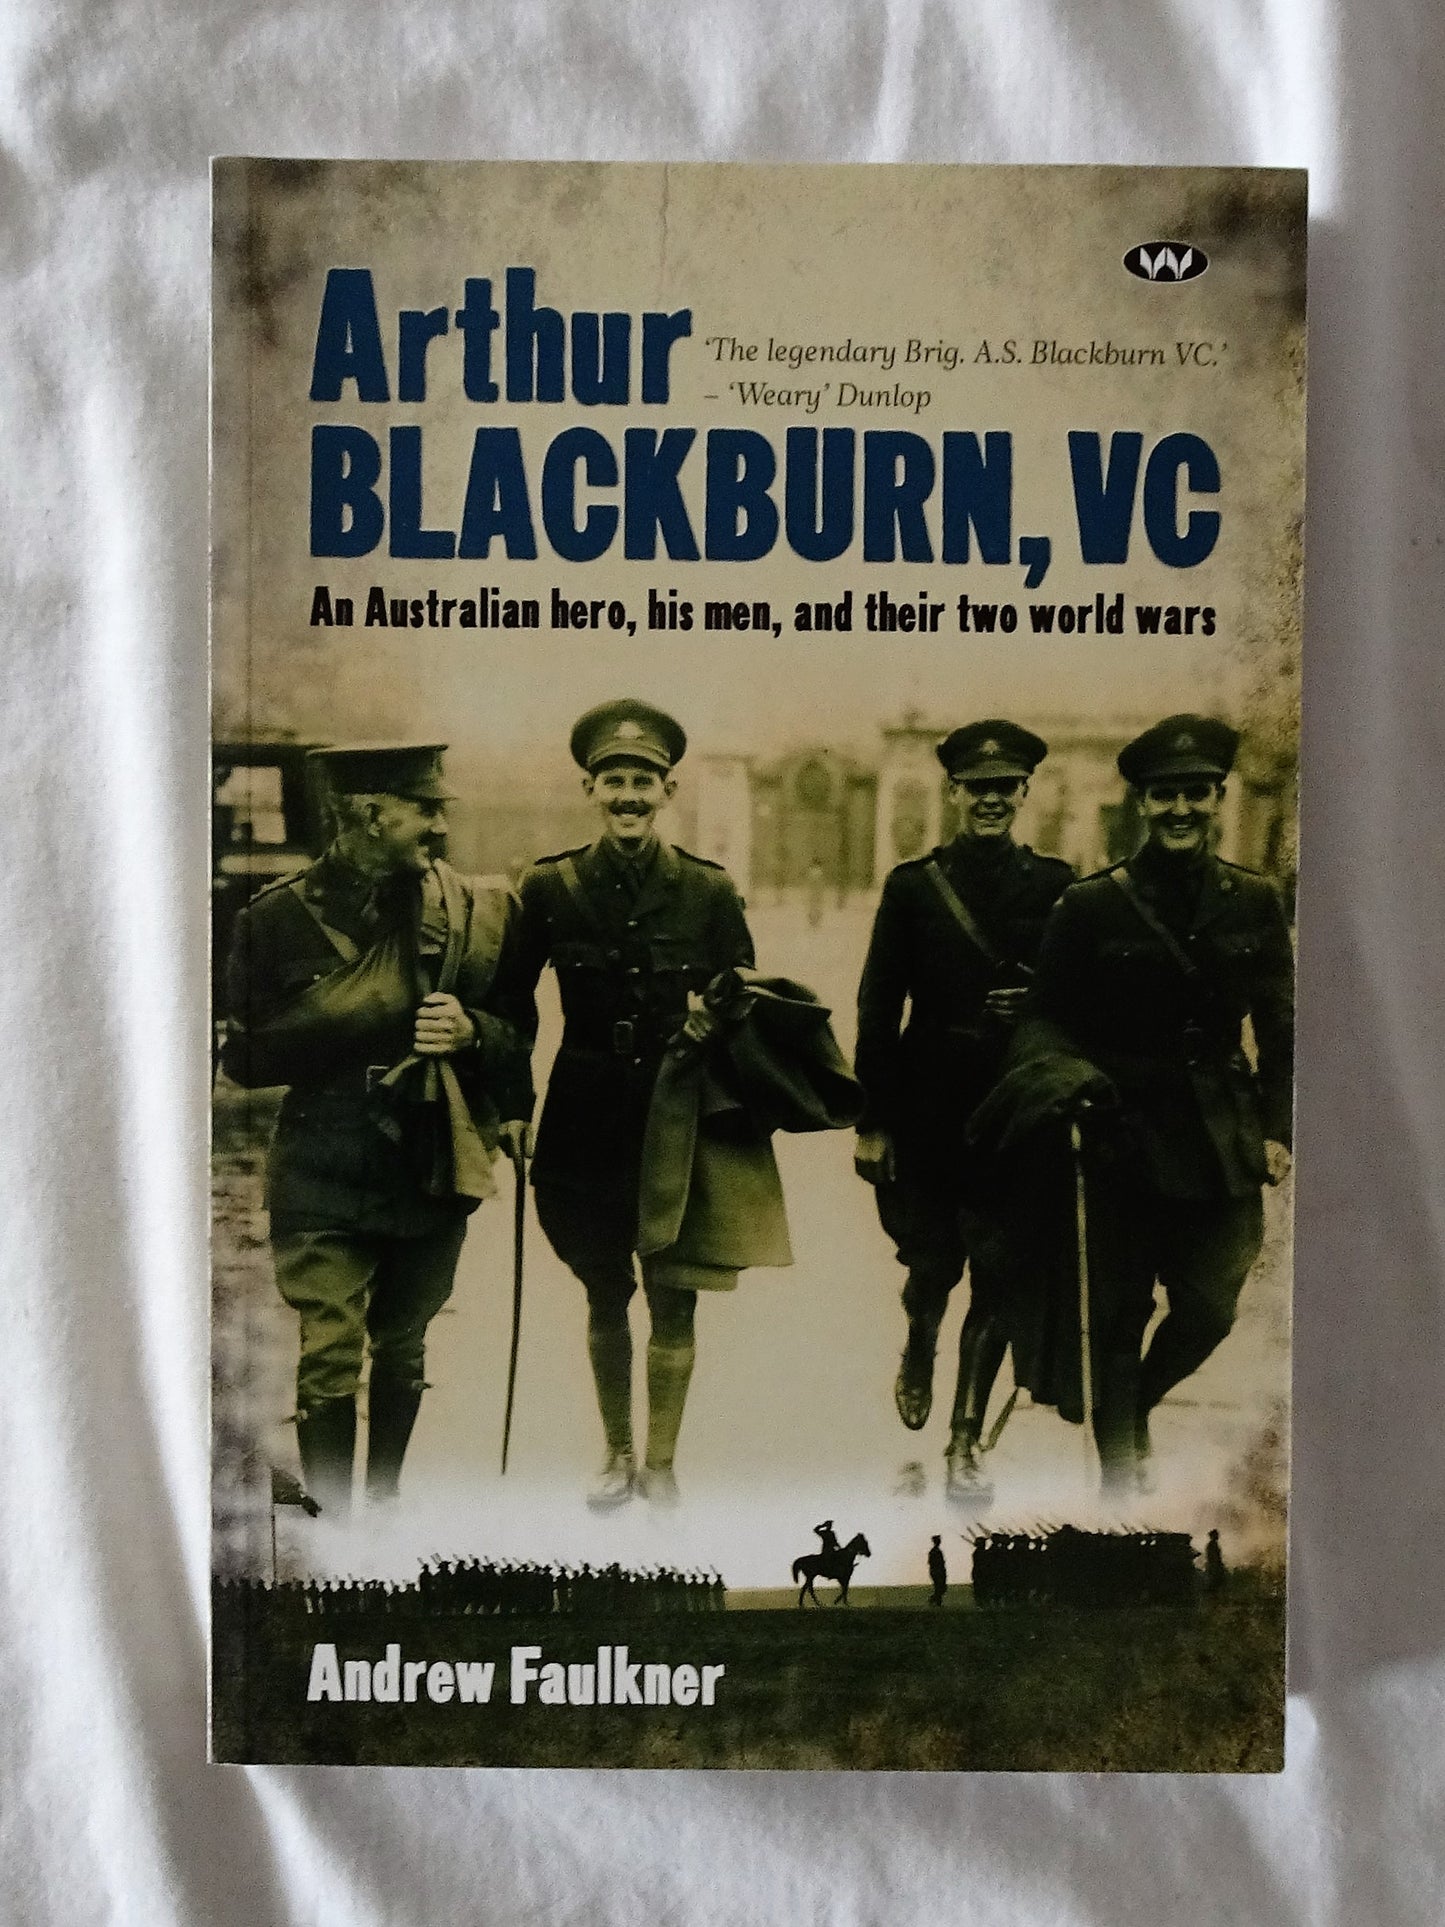 Arthur Blackburn, VC by Andrew Faulkner